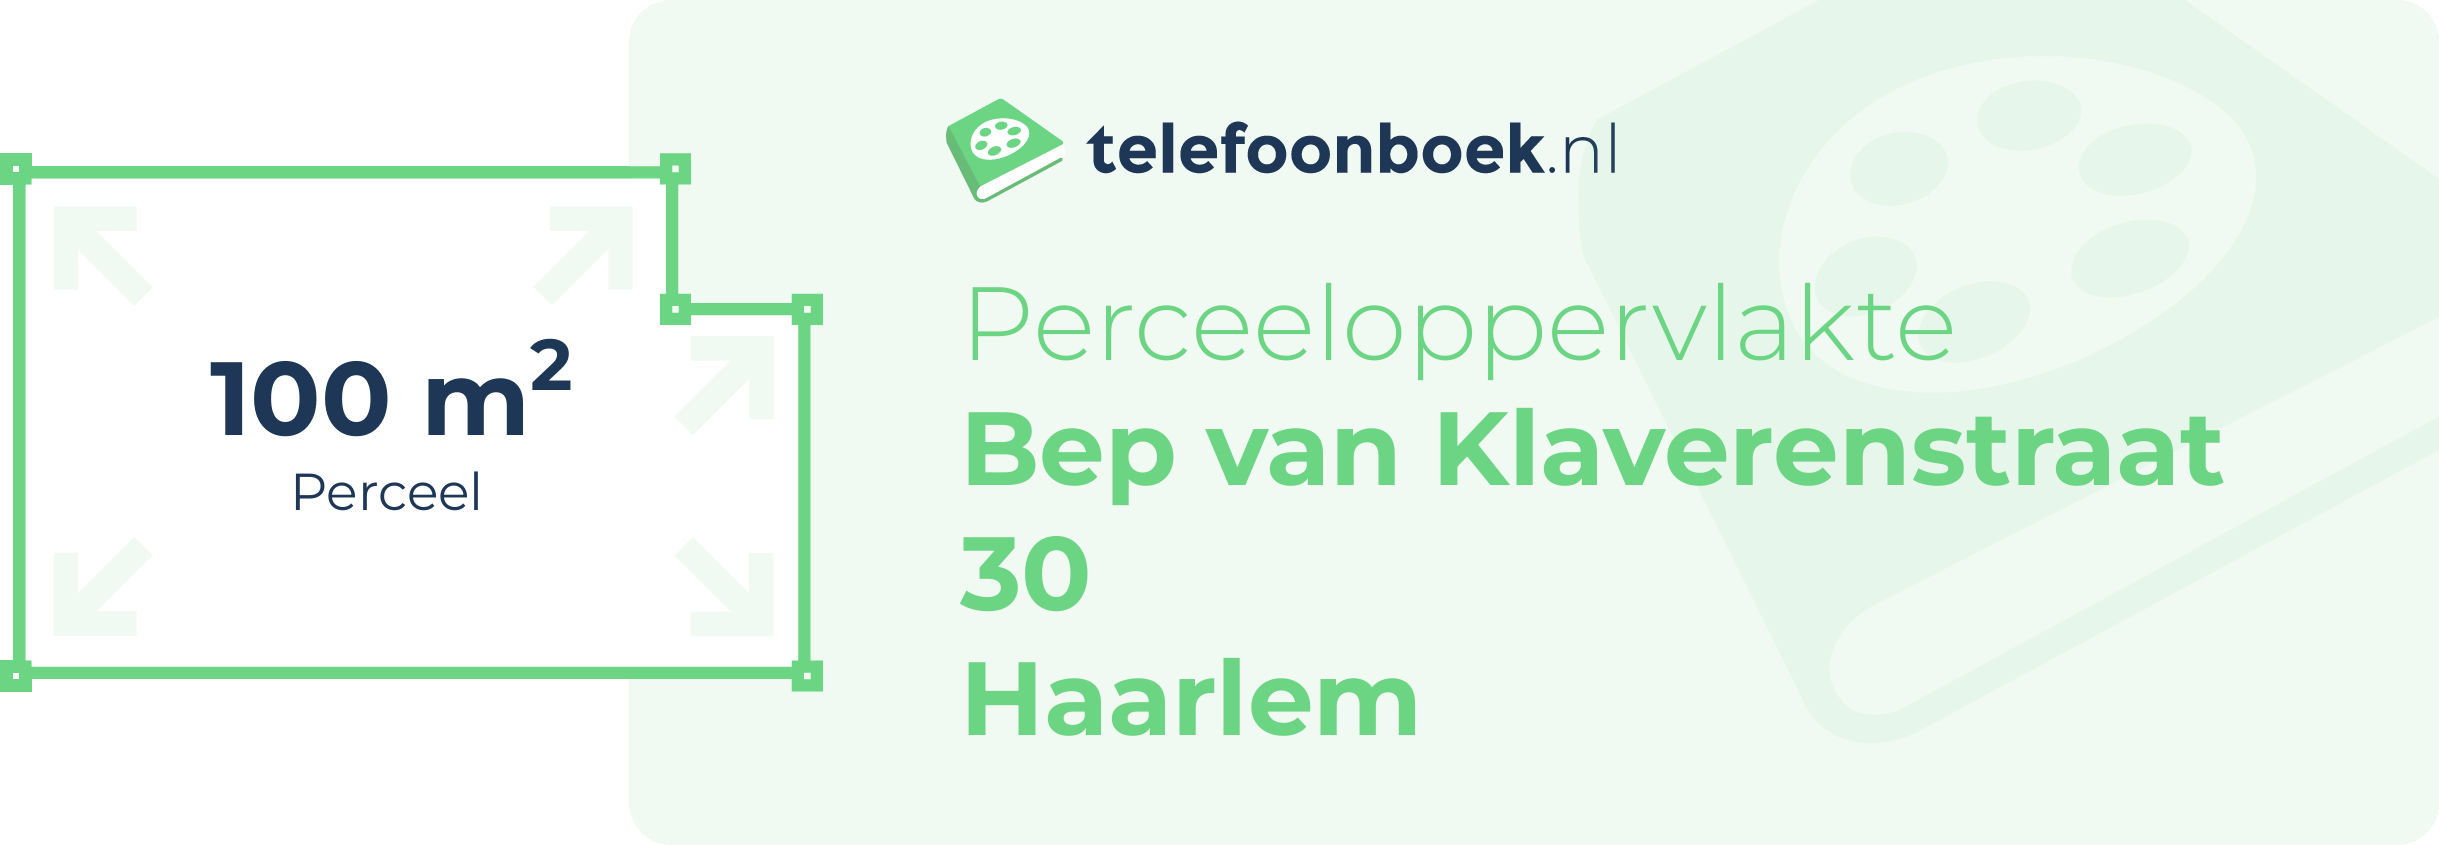 Perceeloppervlakte Bep Van Klaverenstraat 30 Haarlem